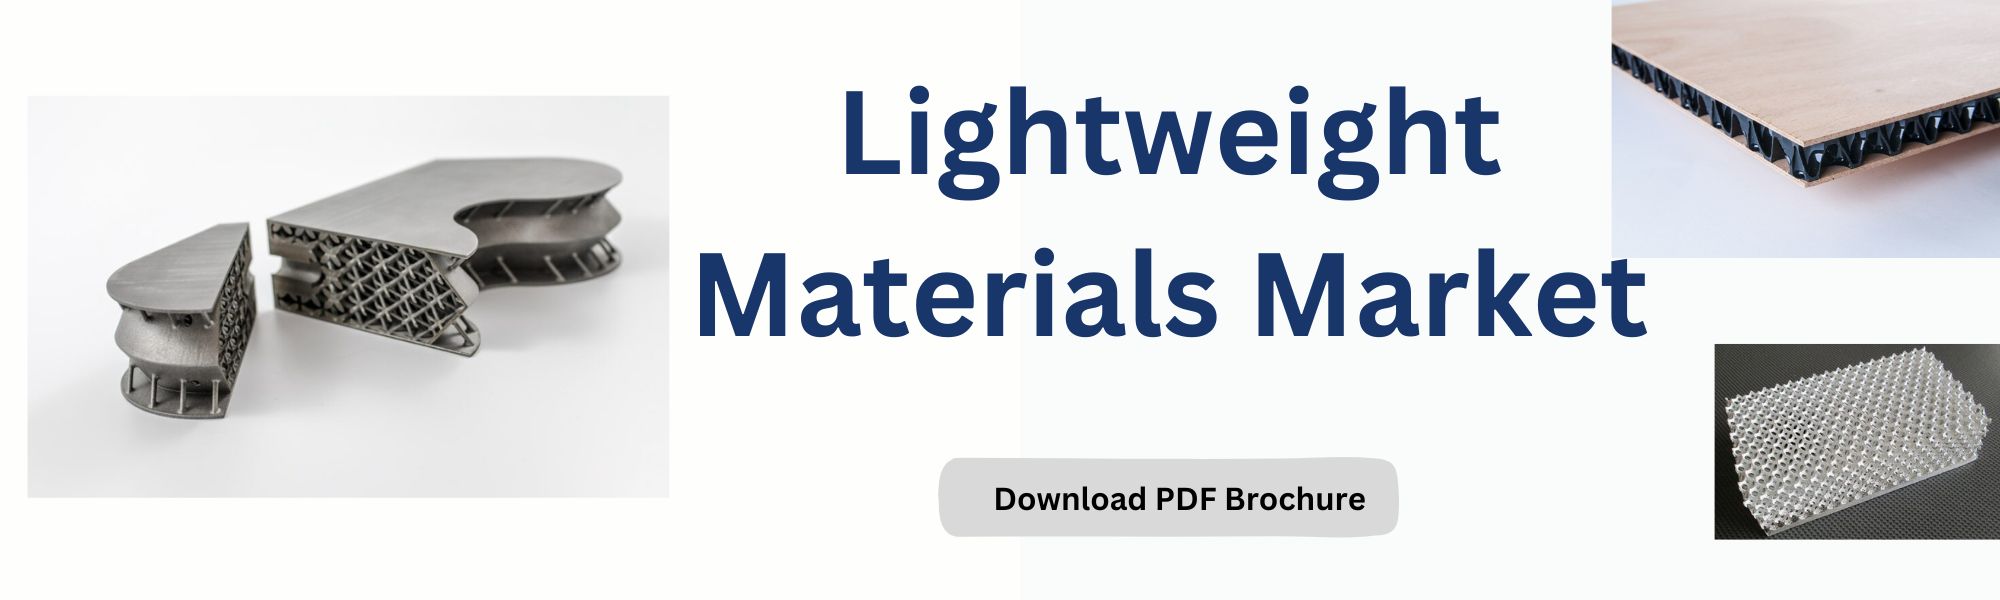 Lightweight Materials Market 3